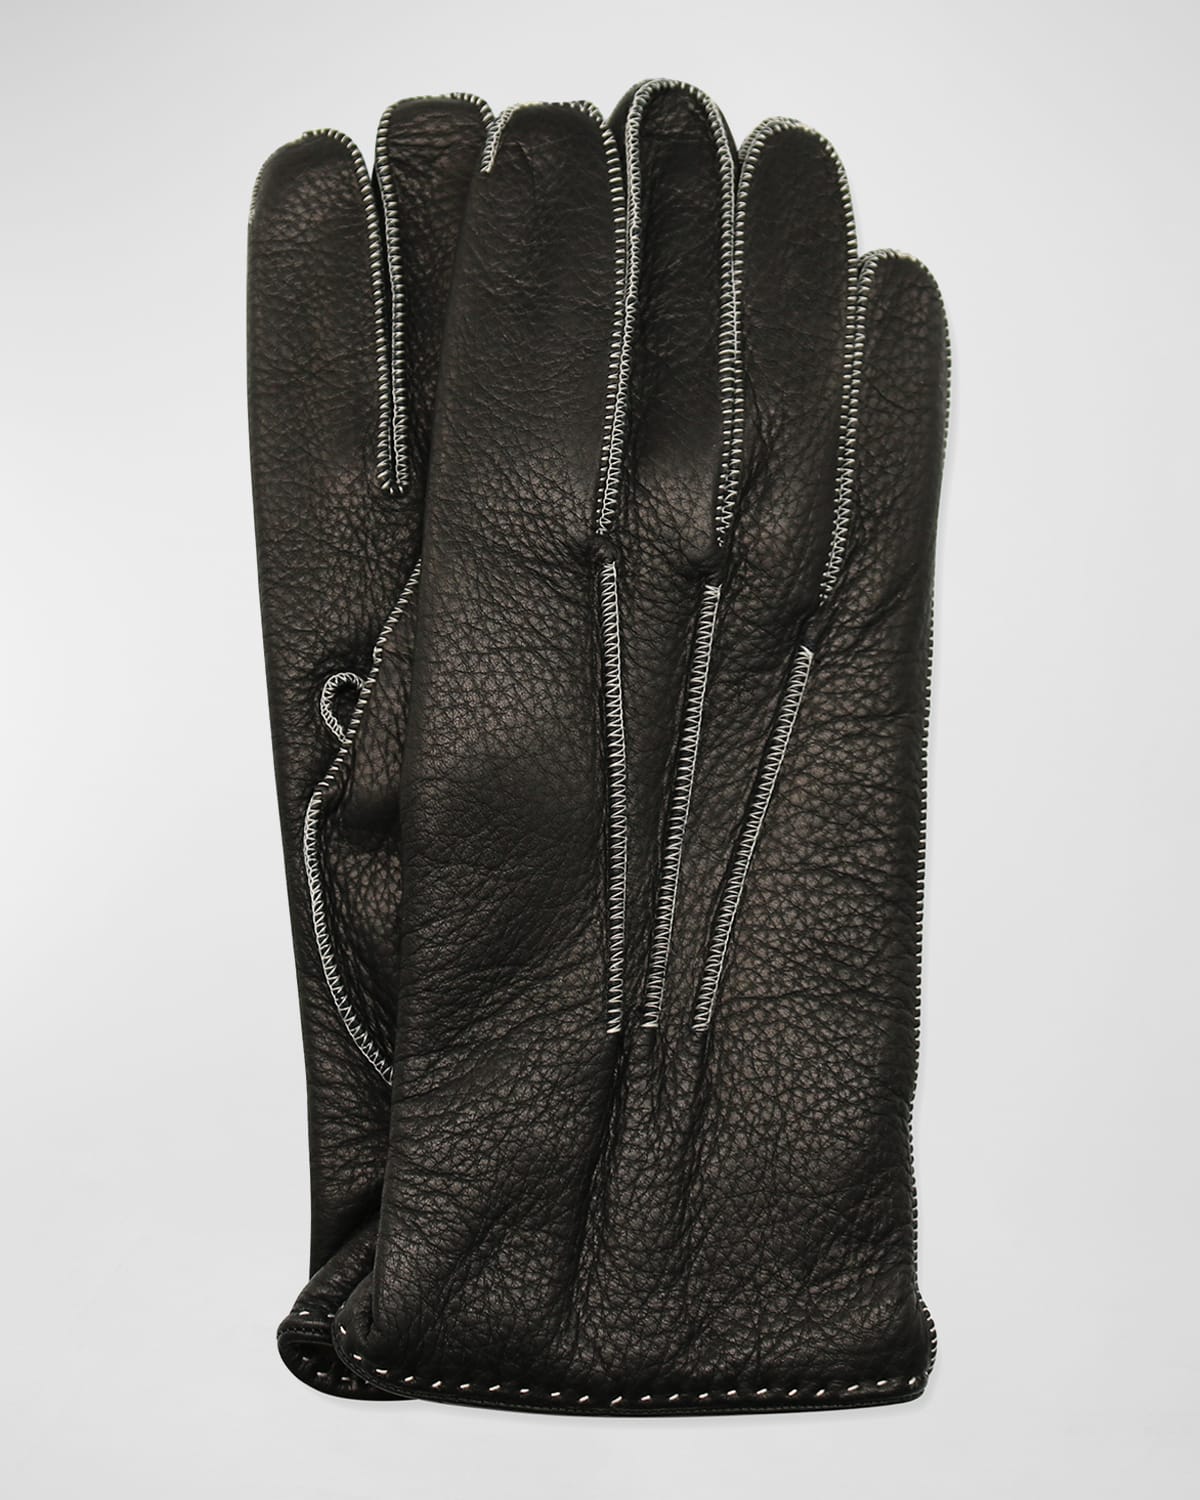 Men's Deerskin Gloves w/ Contrast Stitching